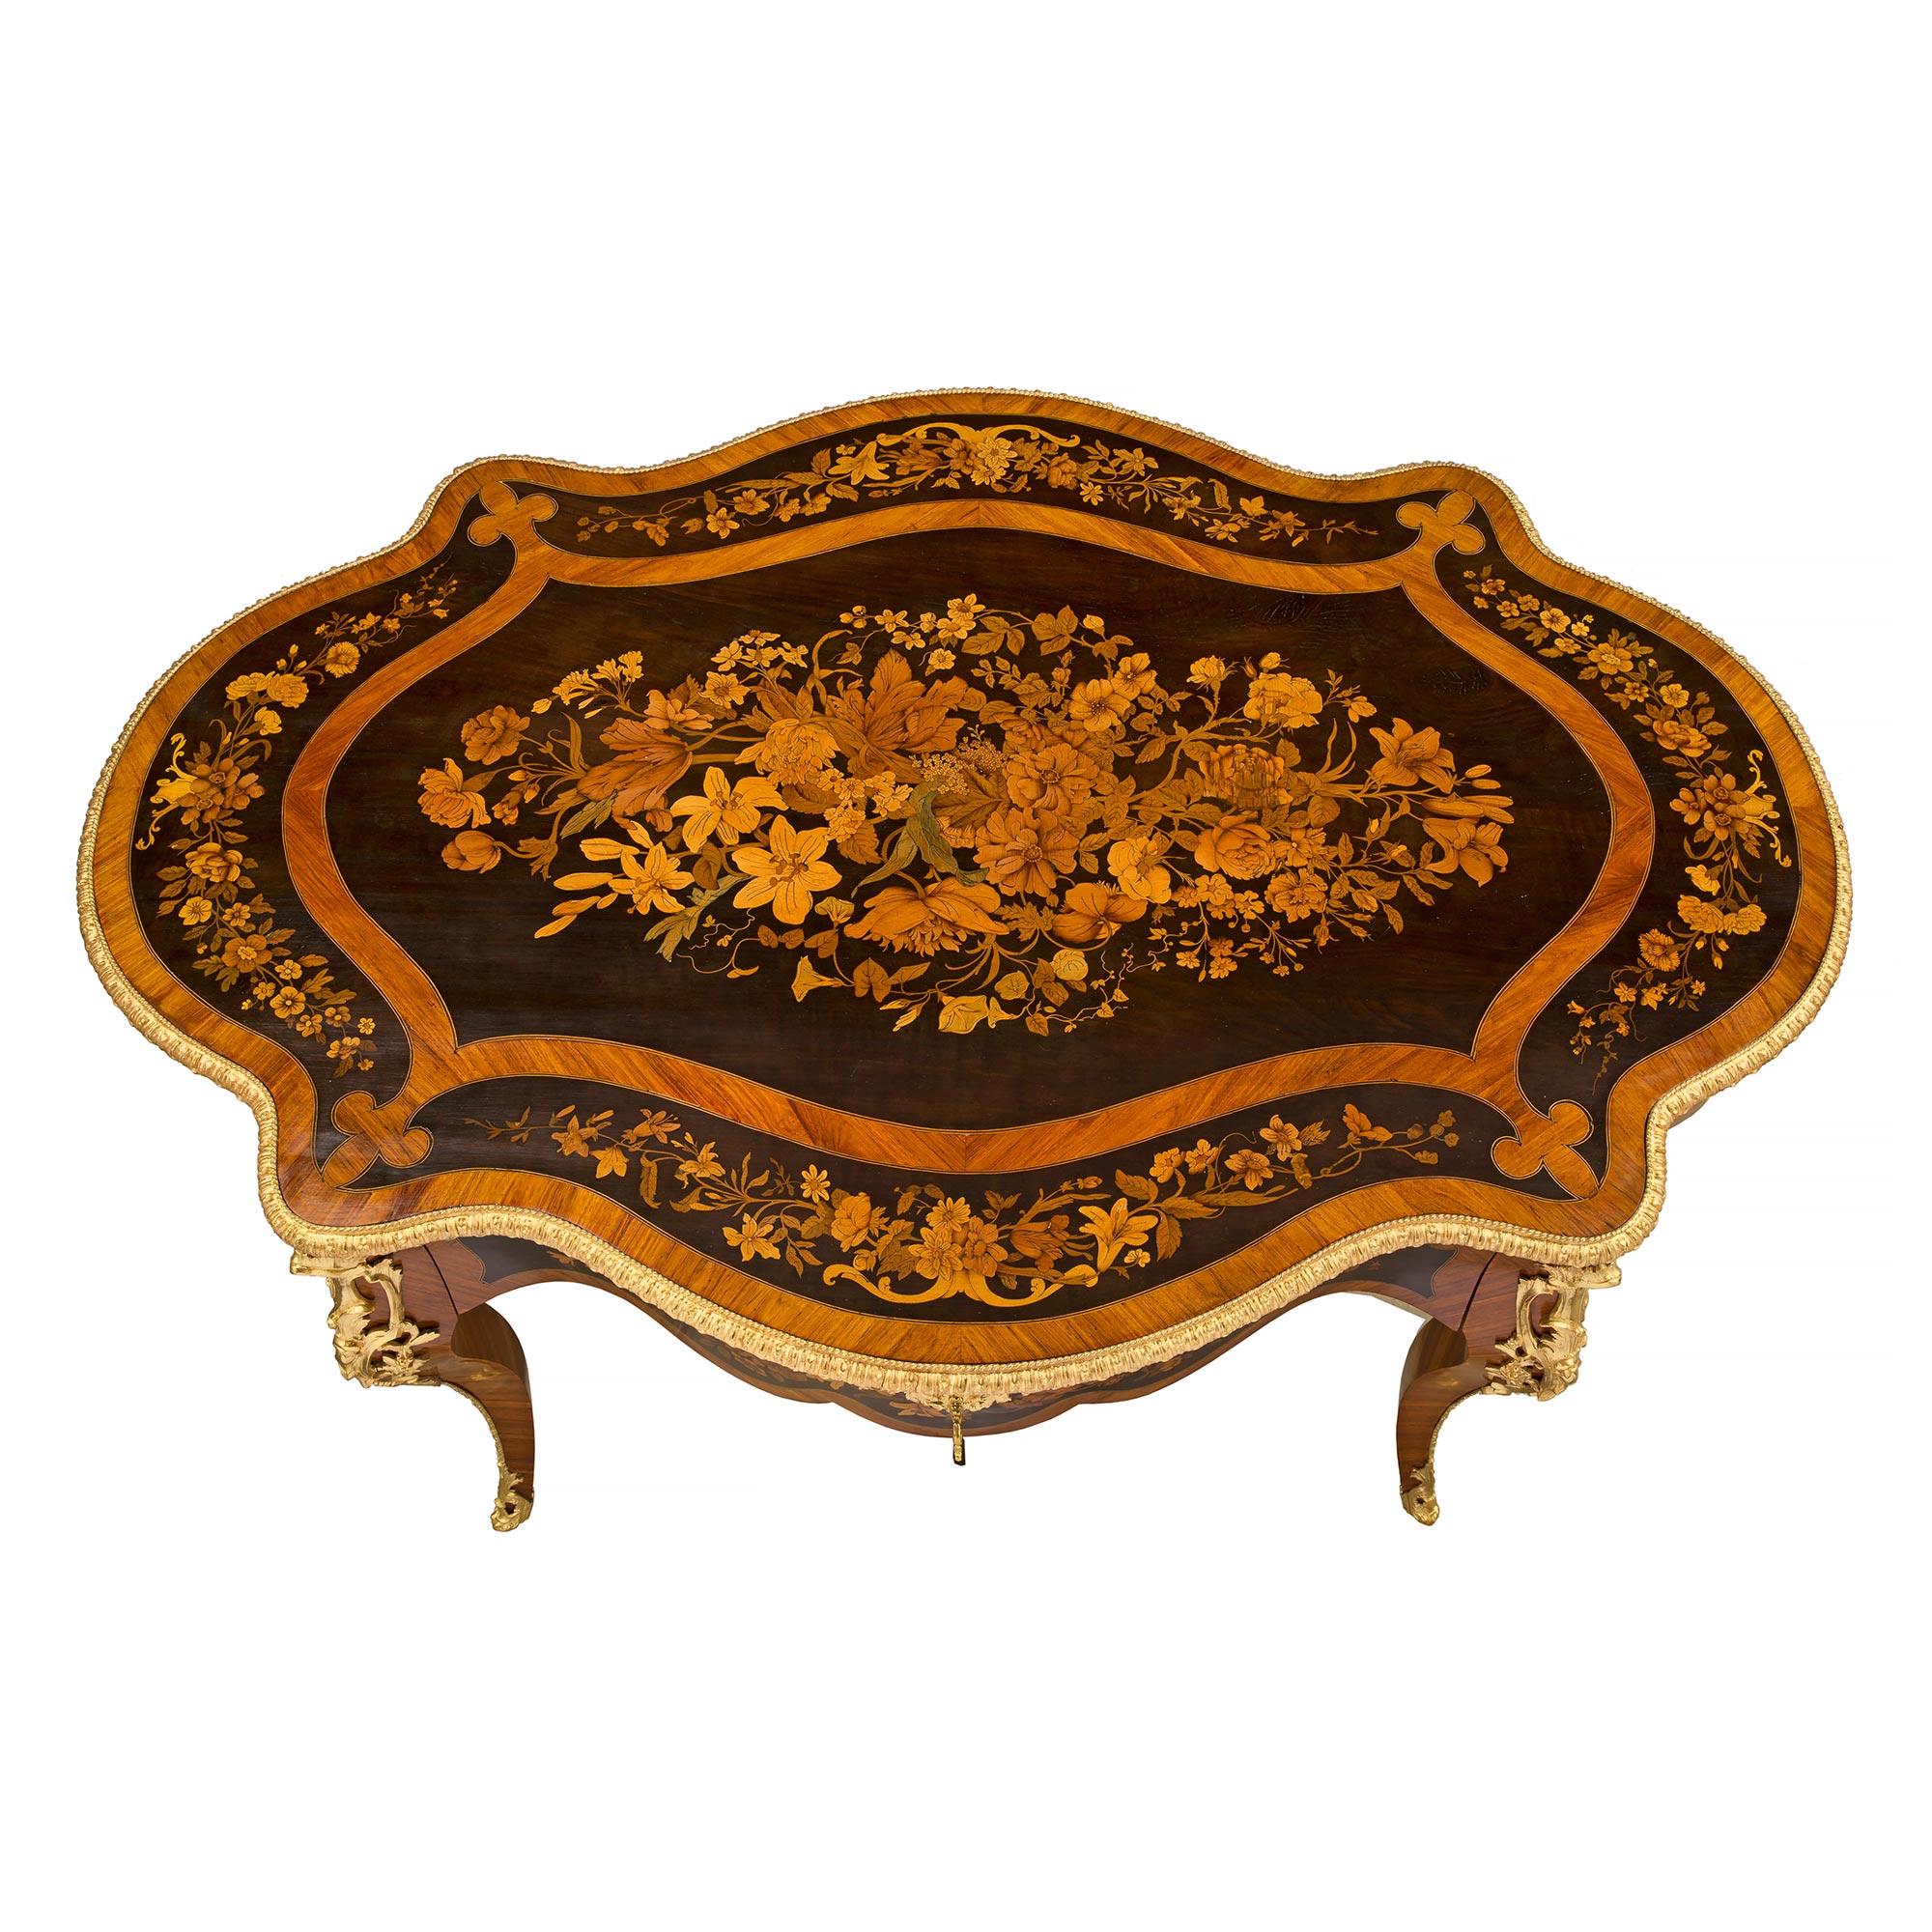 Table de centre en bois exotique, marqueterie et bronze doré, d'époque Louis XV et Napoléon III, datant du XIXe siècle. La table est surélevée par d'élégants pieds cabriole avec de beaux sabots percés et enveloppants en bronze doré et un fin filet